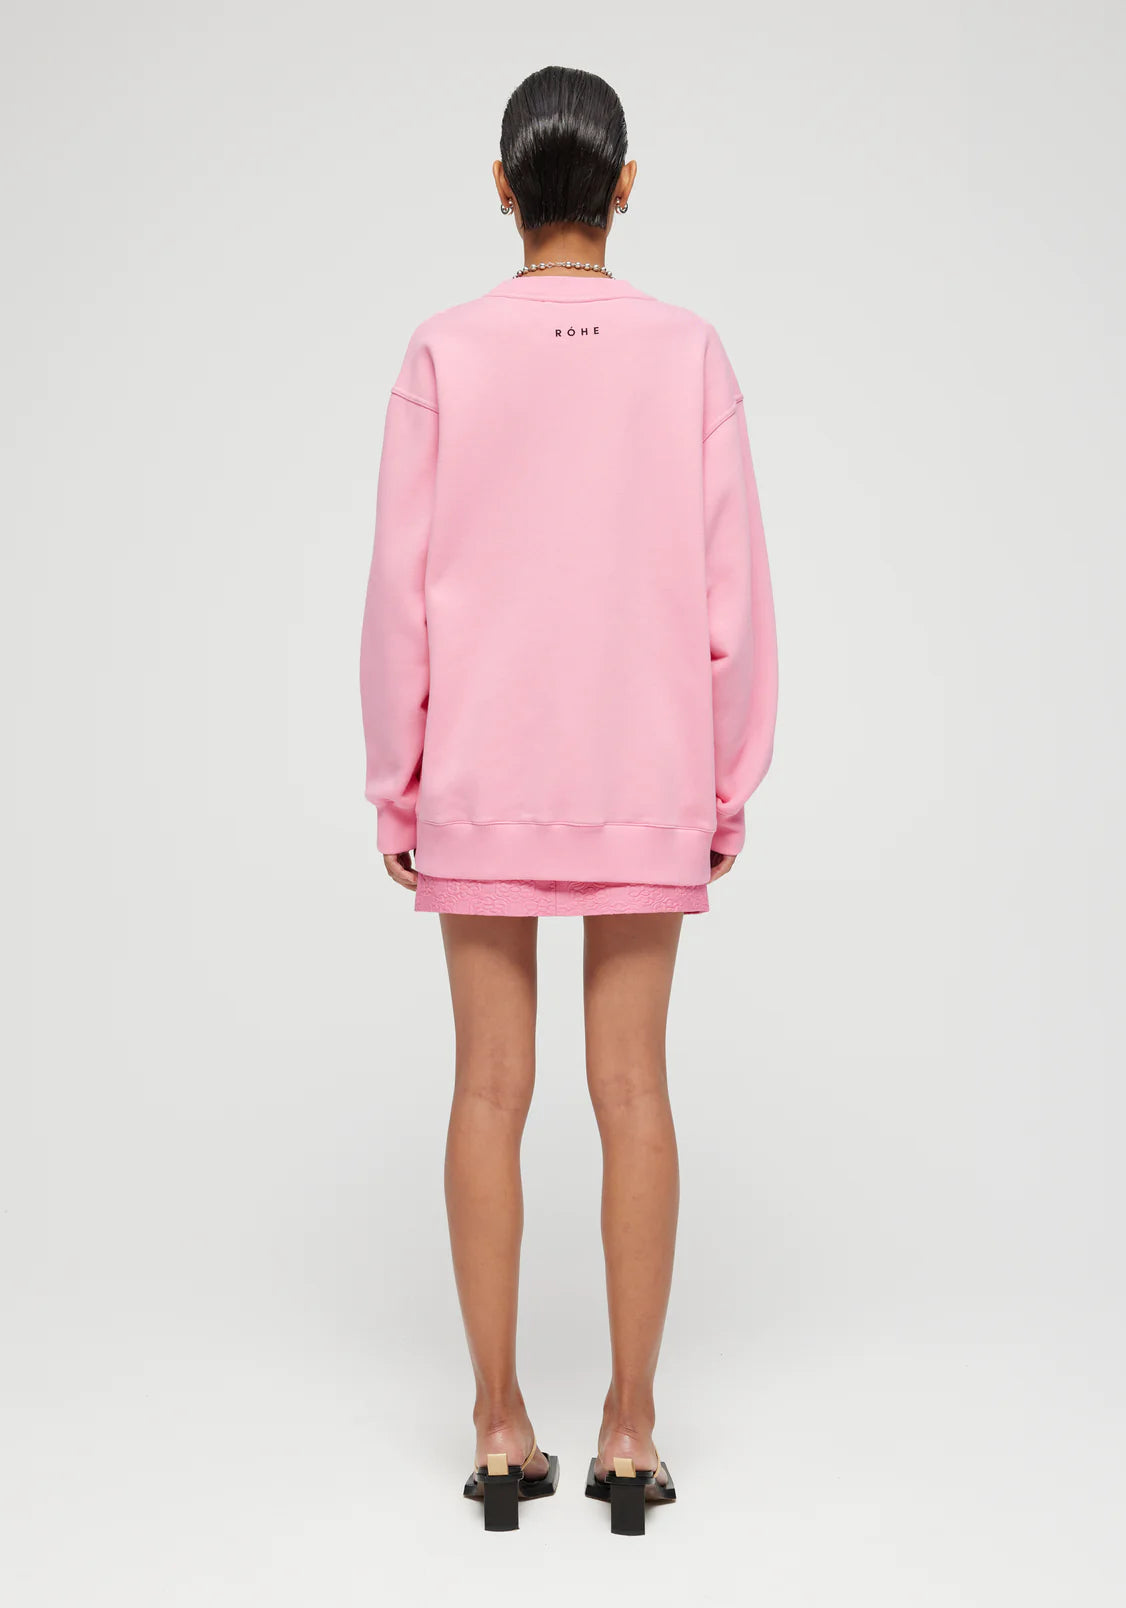 
                  
                    Oversized Sweatshirt in Pop Pink
                  
                